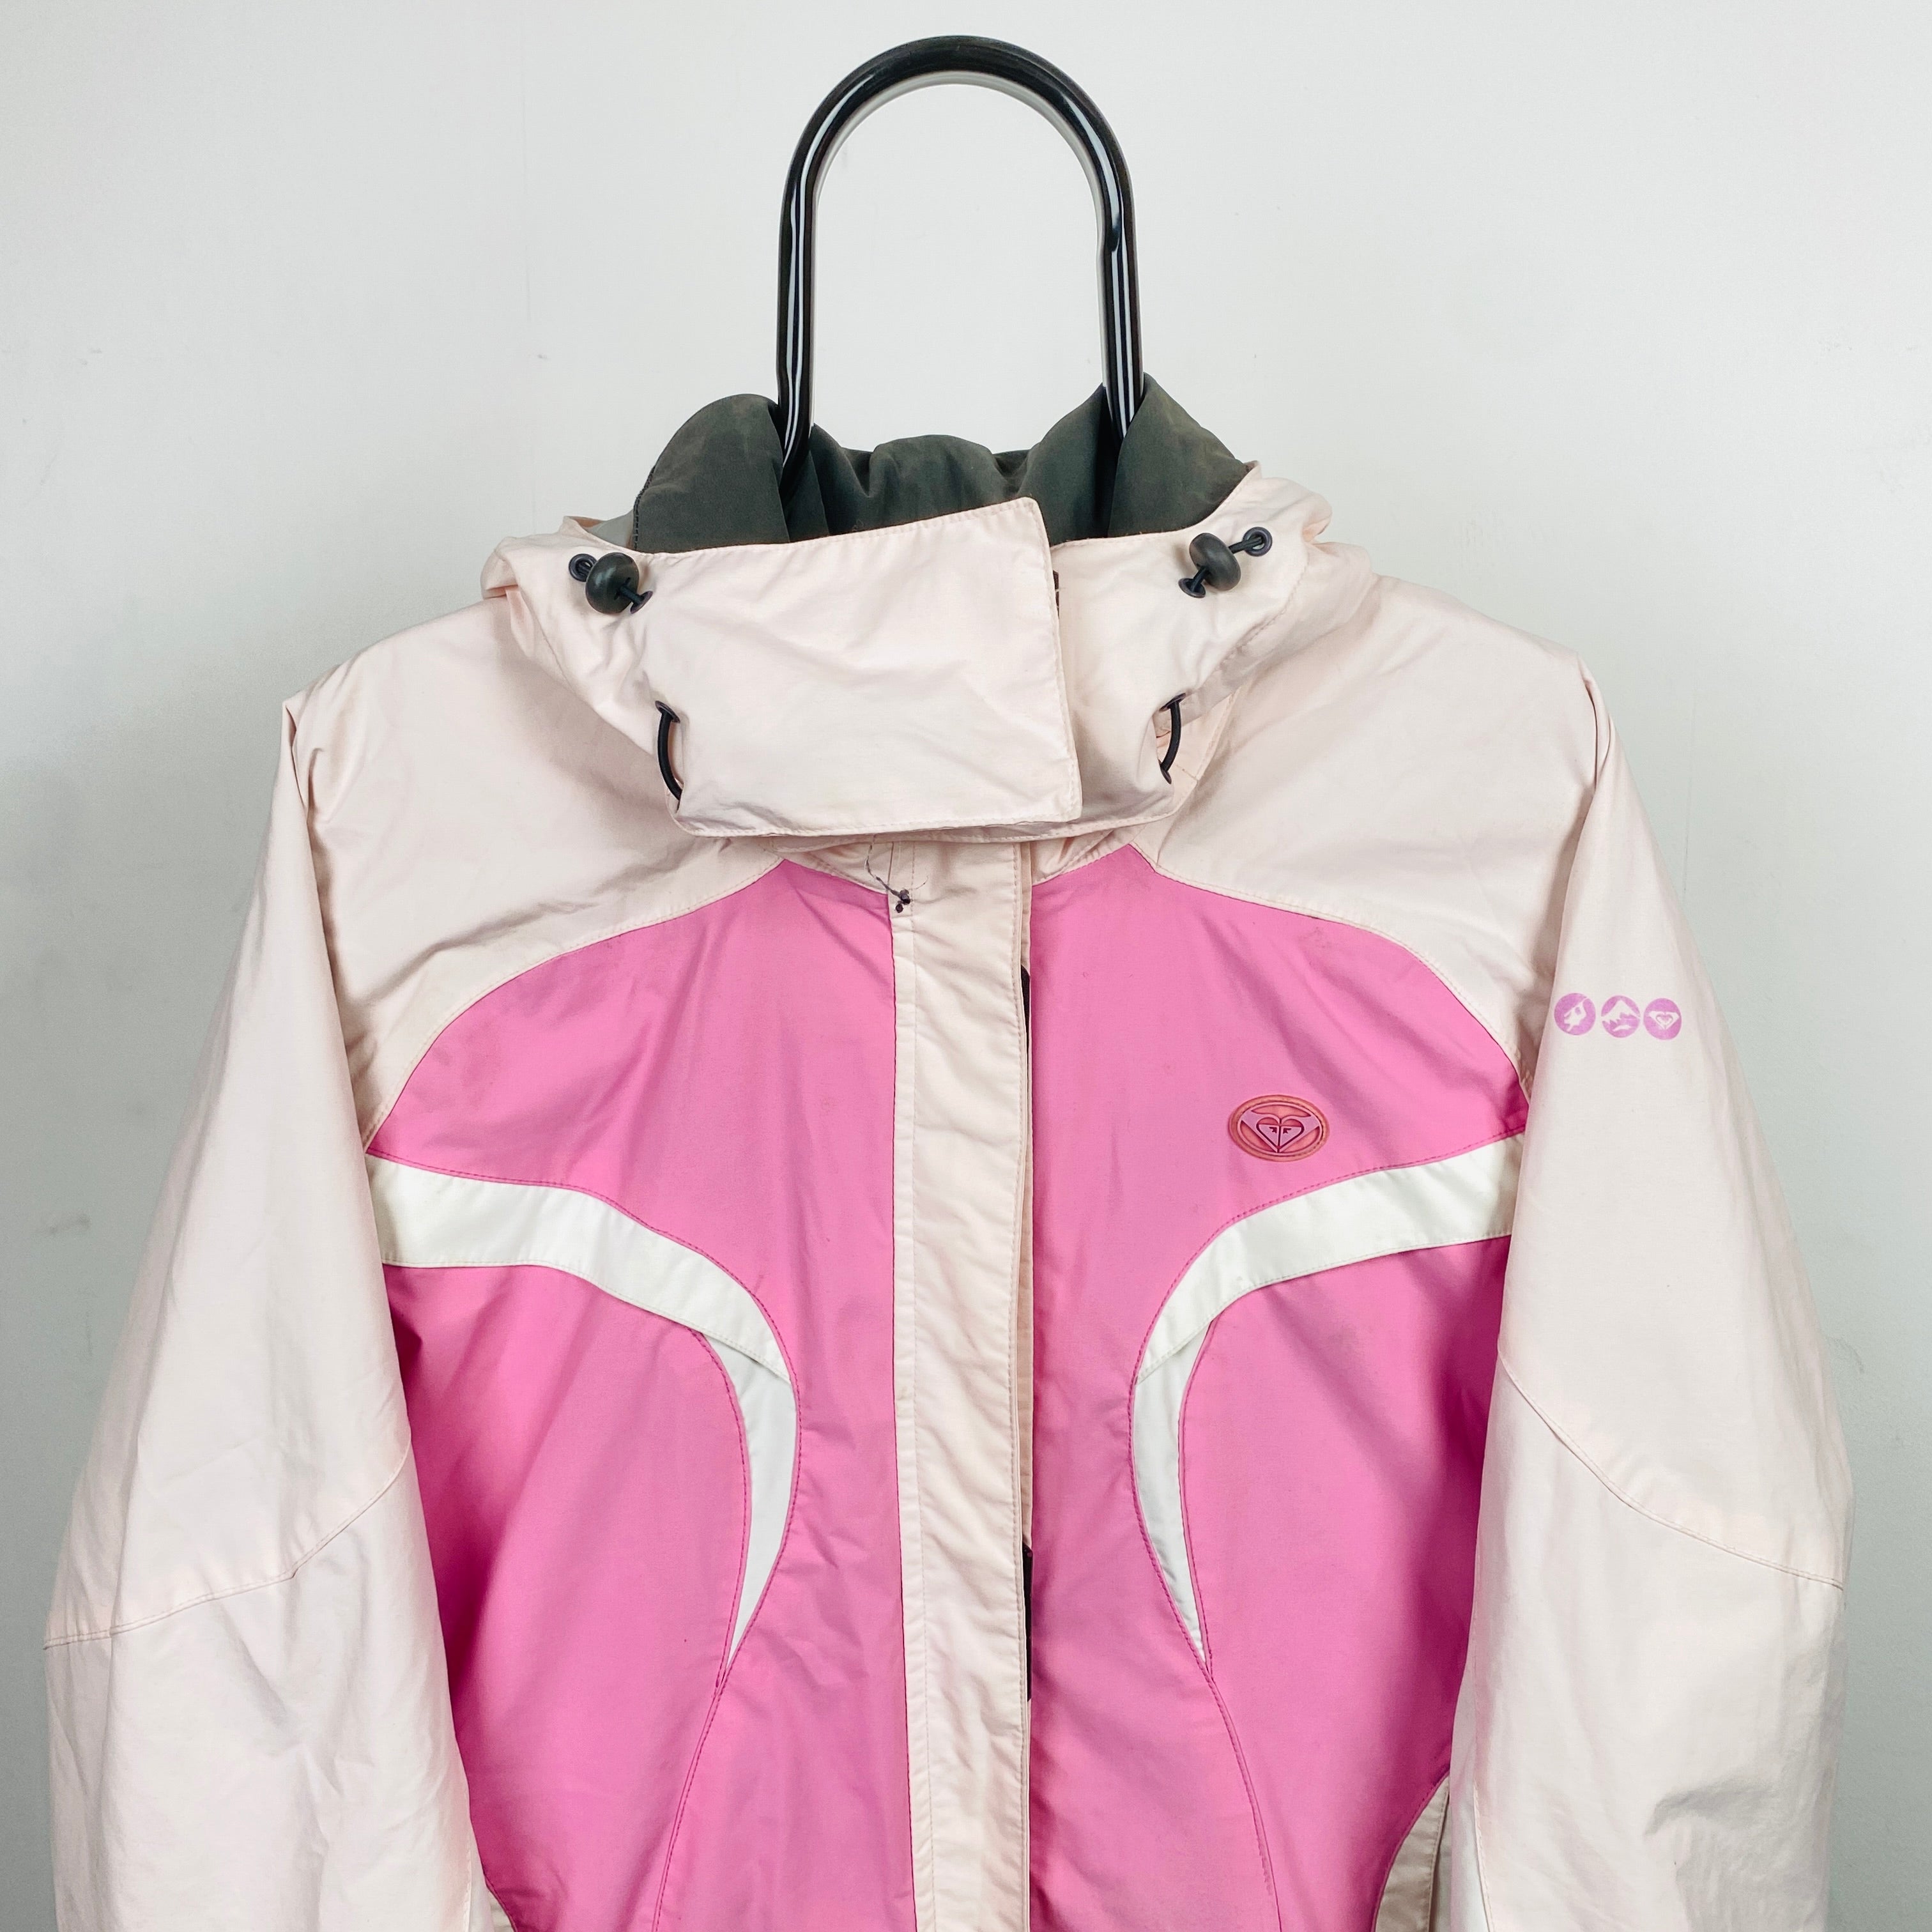 PINK Windbreaker Jacket for Women Small 